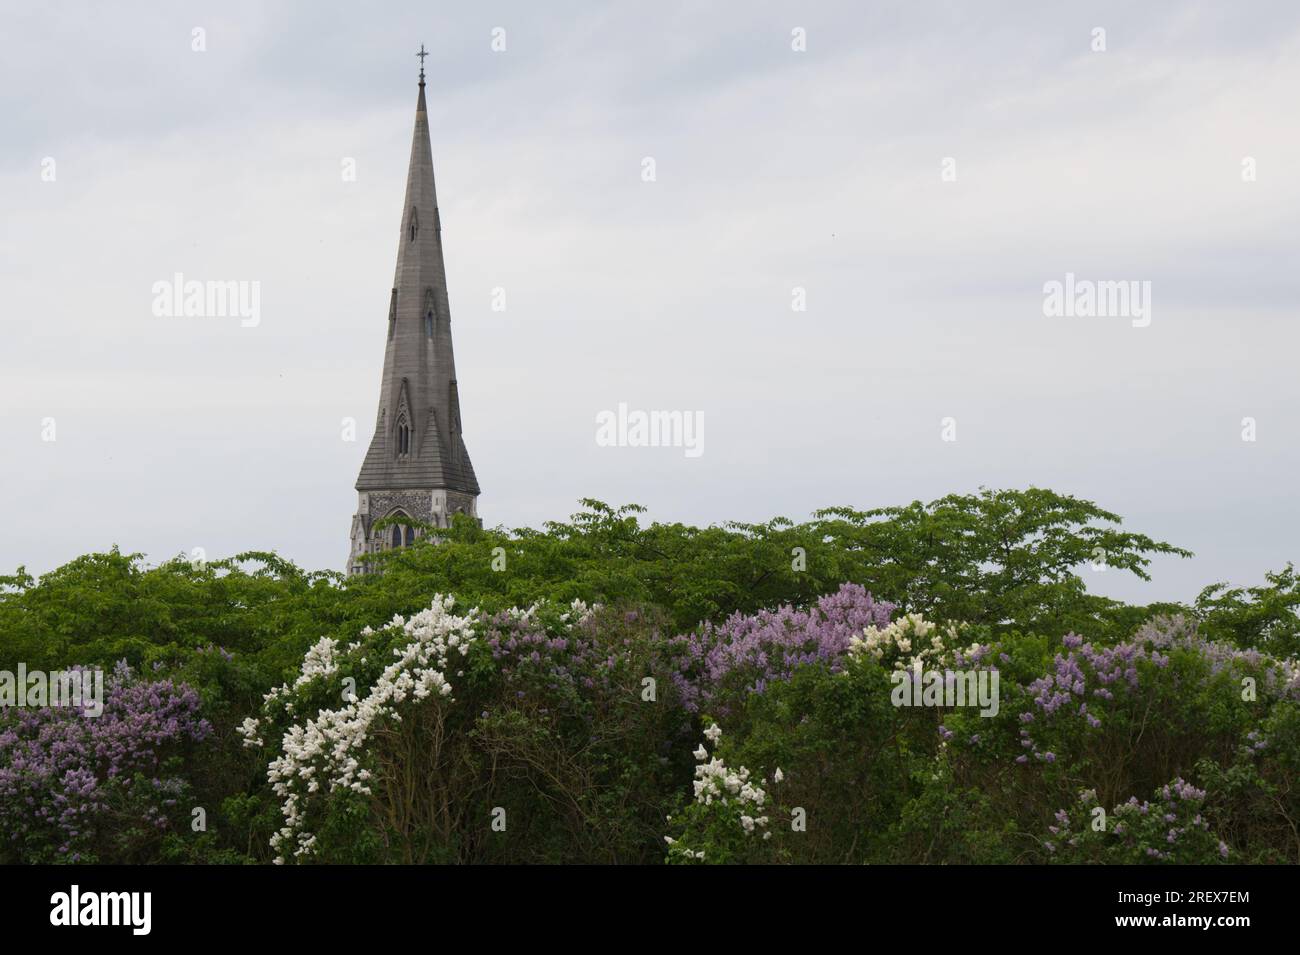 Spire of St. Alban's Church, oder die englische Kirche, die über weißen und violetten Fliederblumen und Bäumen in Kopenhagen, Dänemark zeigt Stockfoto